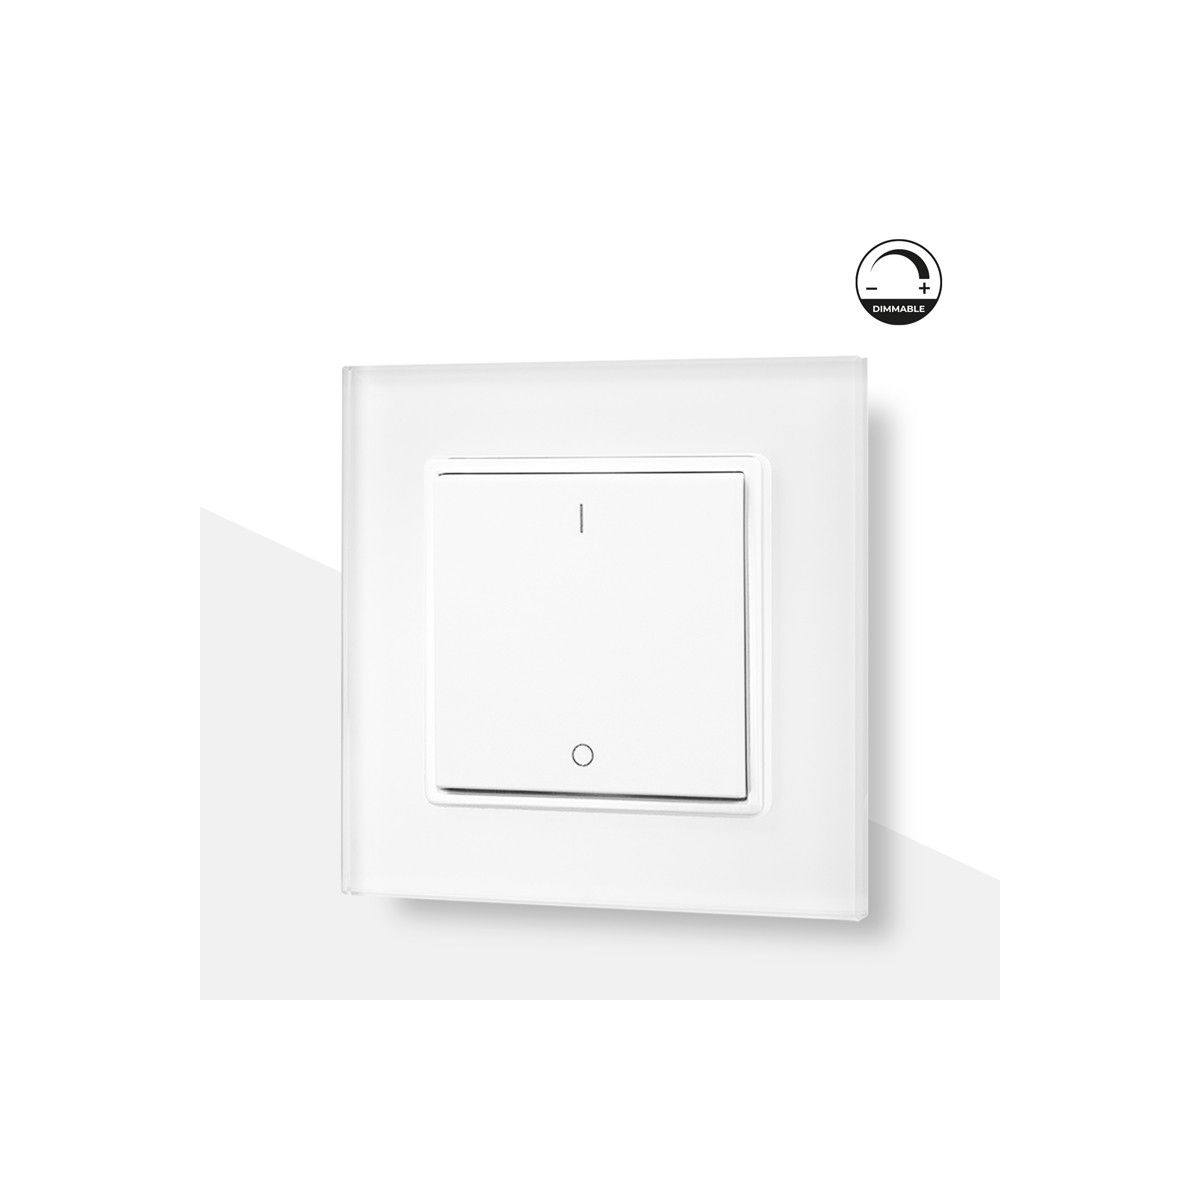 Push button mechanism RF dimmer switch for LED lighting - SUNRICHER - Easy RF